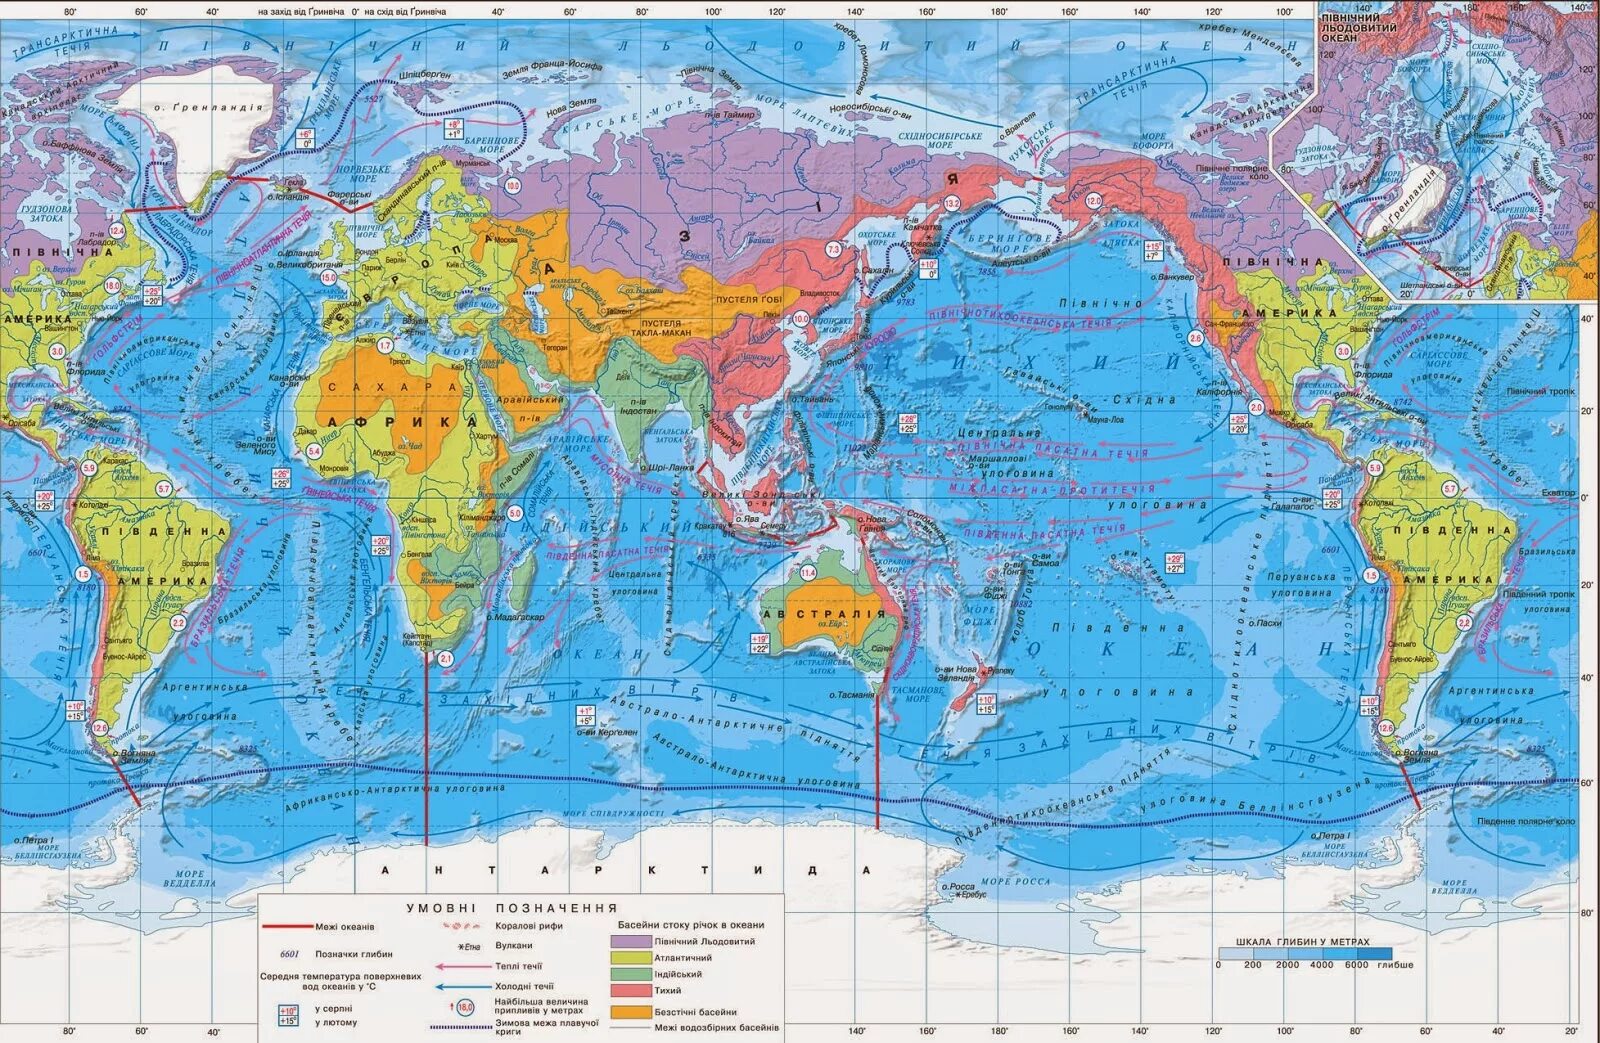 Моря мирового океана на карте. Проливы Тихого океана на карте. Карта мировоготокеана.